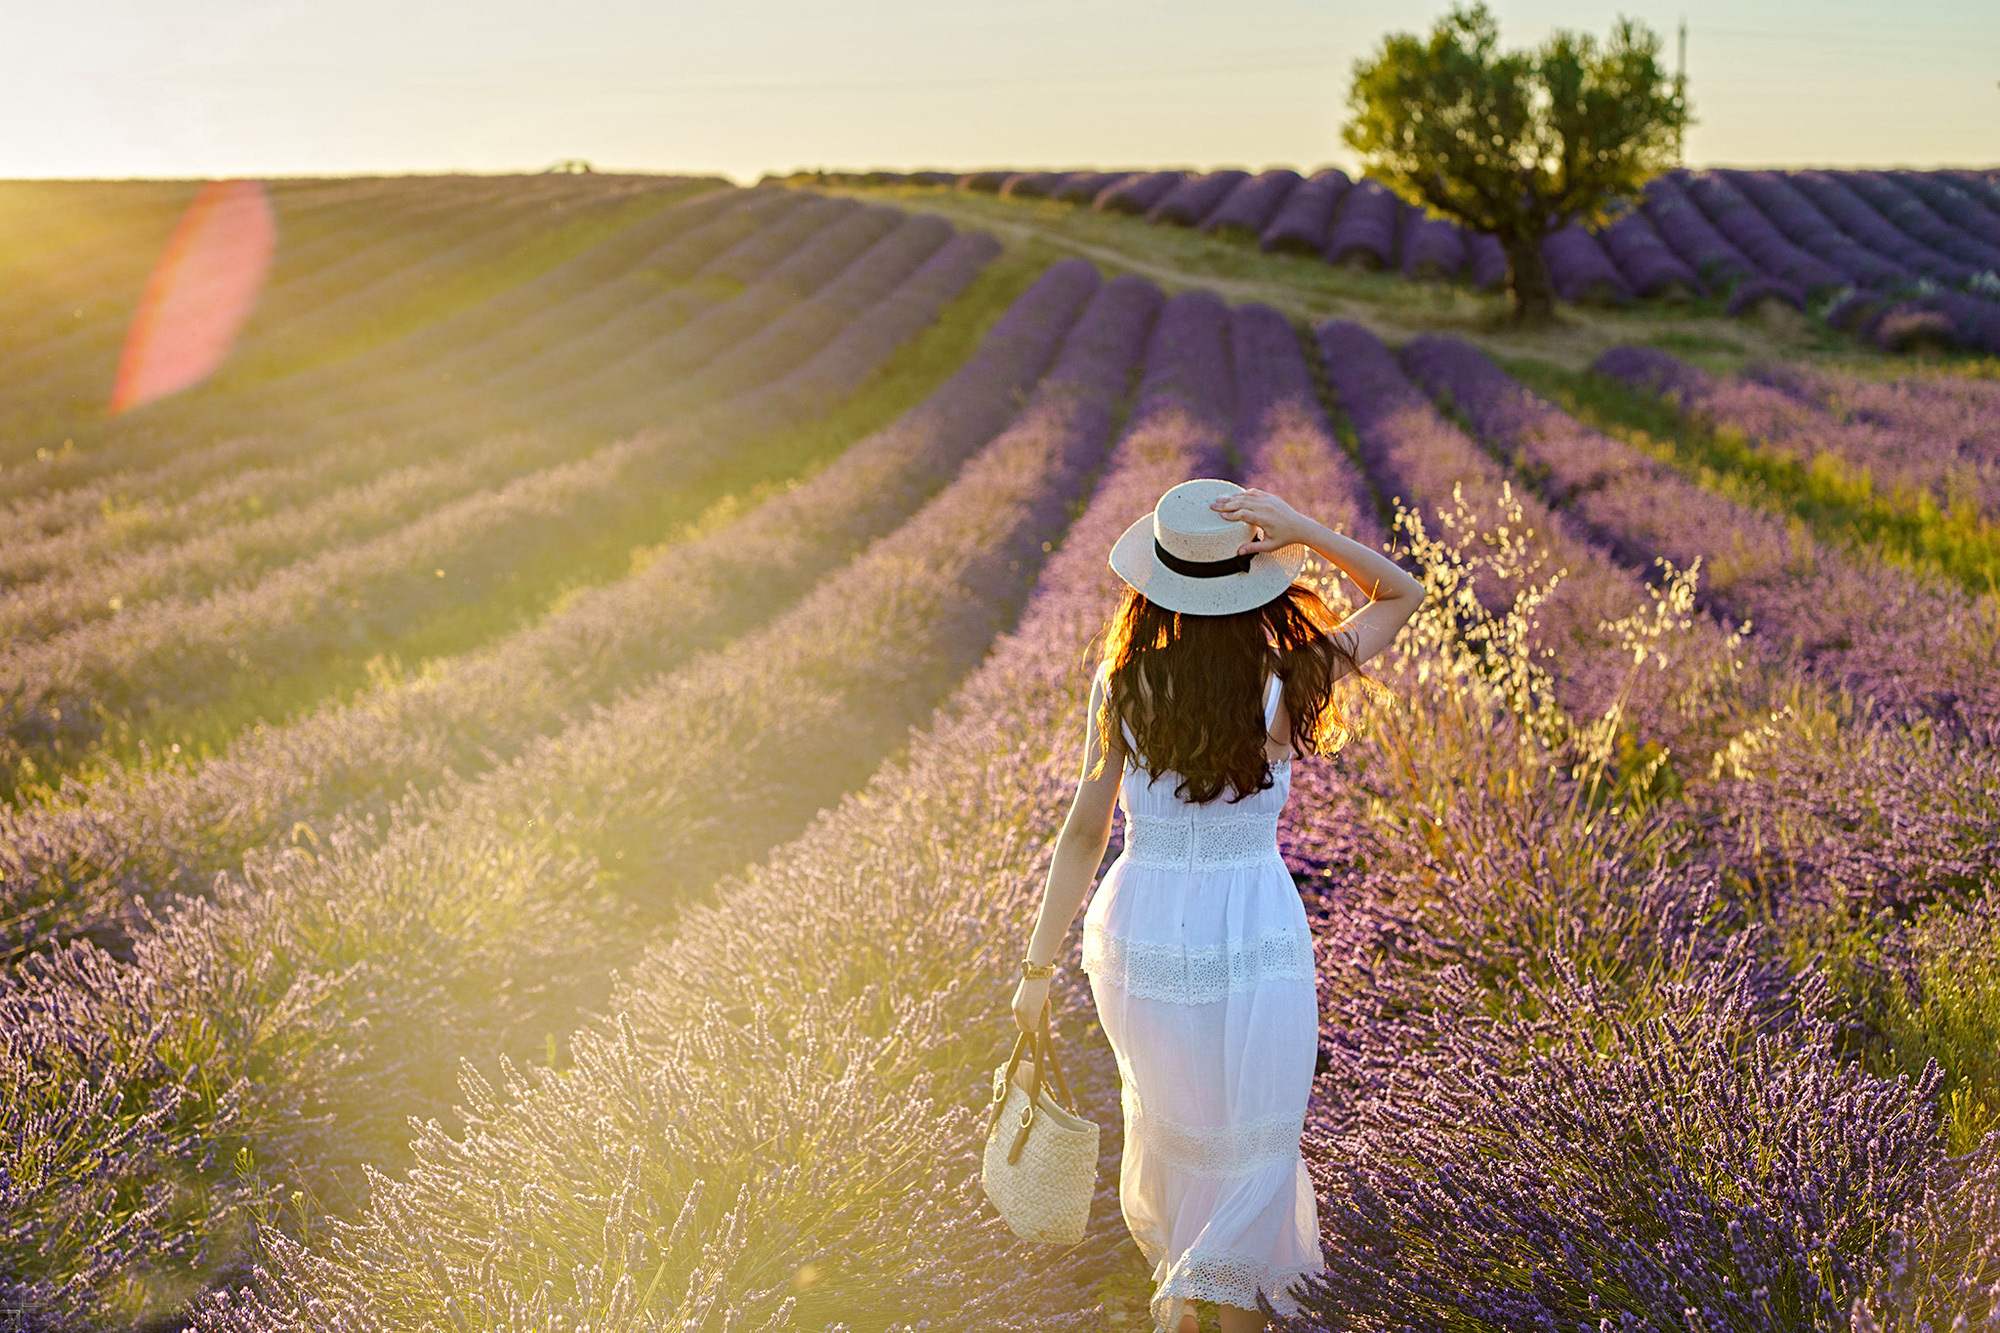 Hãy chiêm ngưỡng cánh đồng hoa lavender tại Pháp với những khung cảnh đẹp như tranh và hương thơm đặc trưng của loại hoa này.